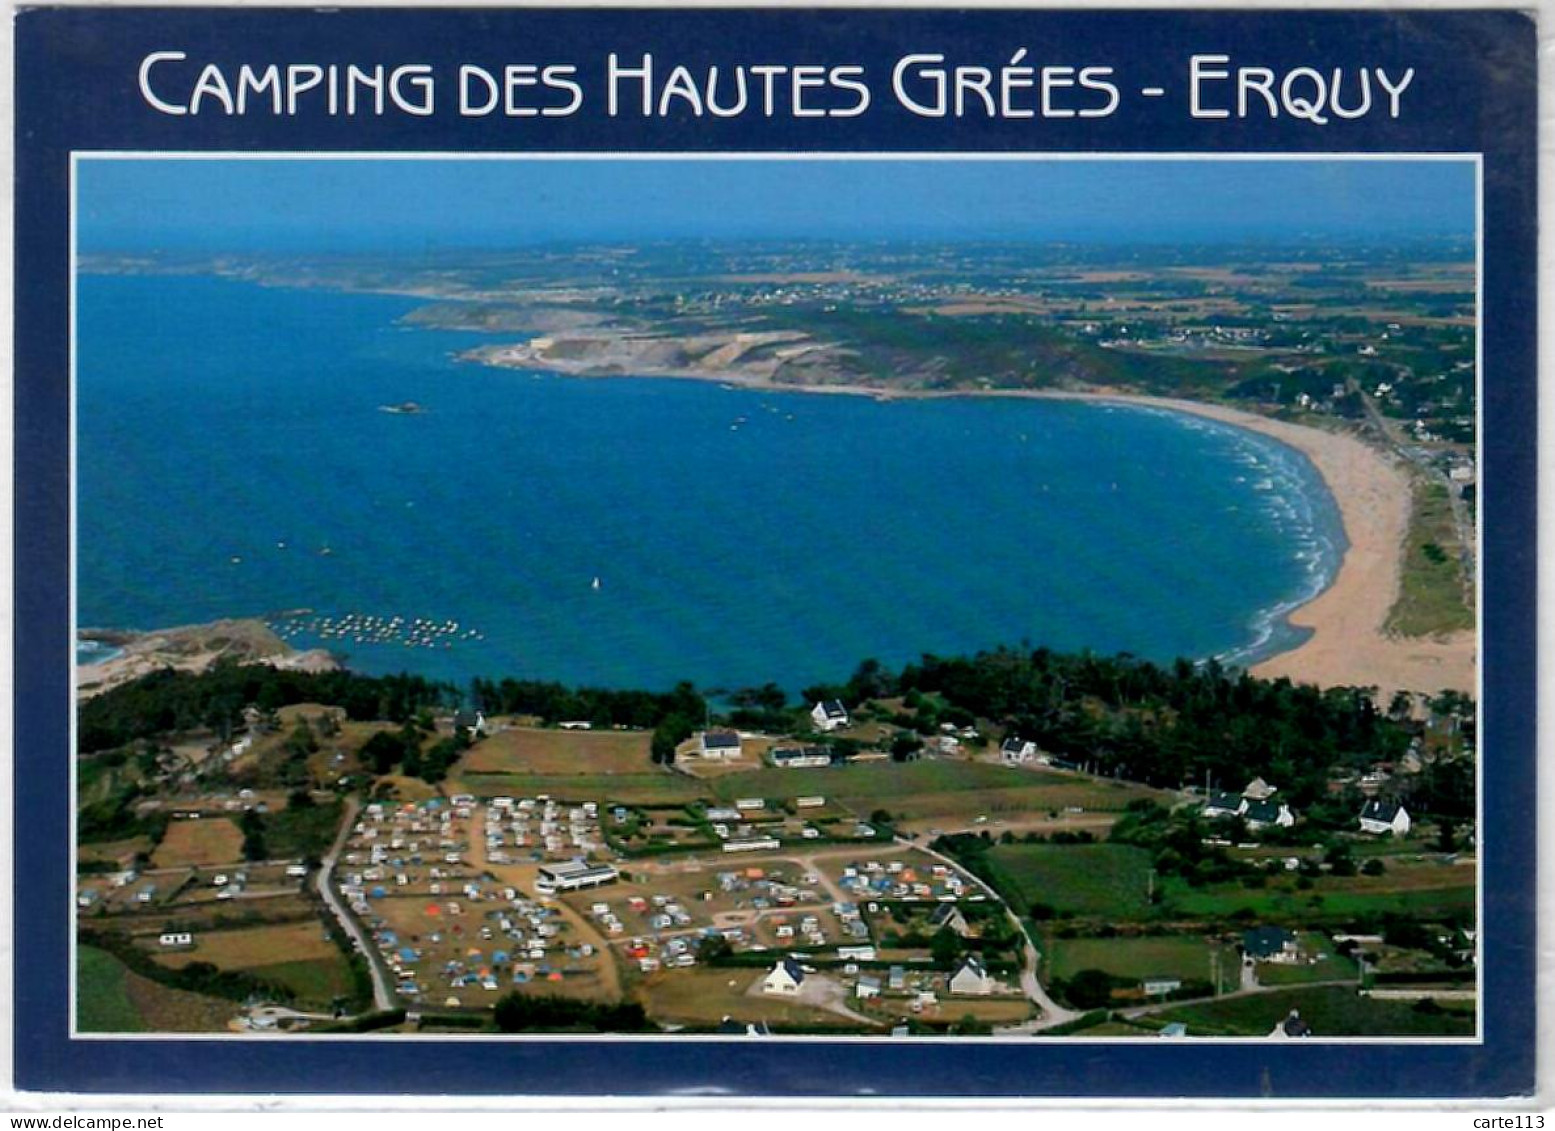 22 - M29051CPM - ERQUY - Camping Des Hautes Grées - LES HOPITAUX - Signée ROUXEL - Très Bon état - COTES-D'ARMOR - Erquy